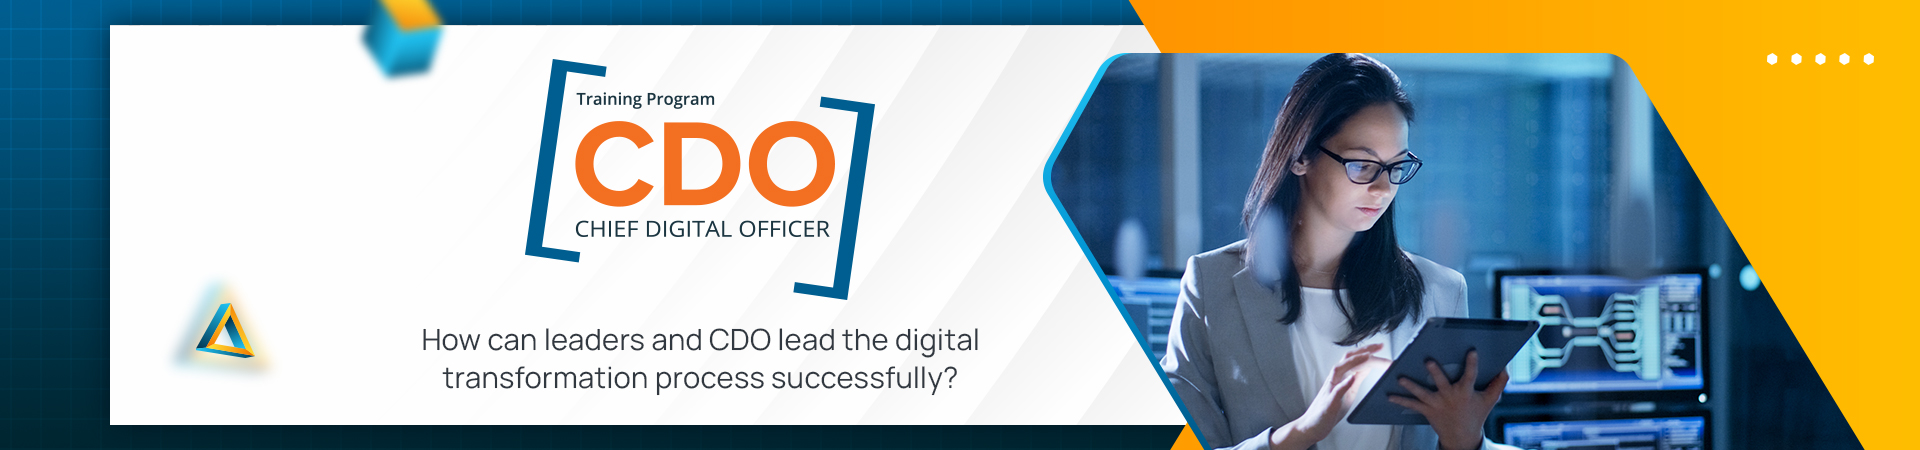 CDO - Chief Digital Officer